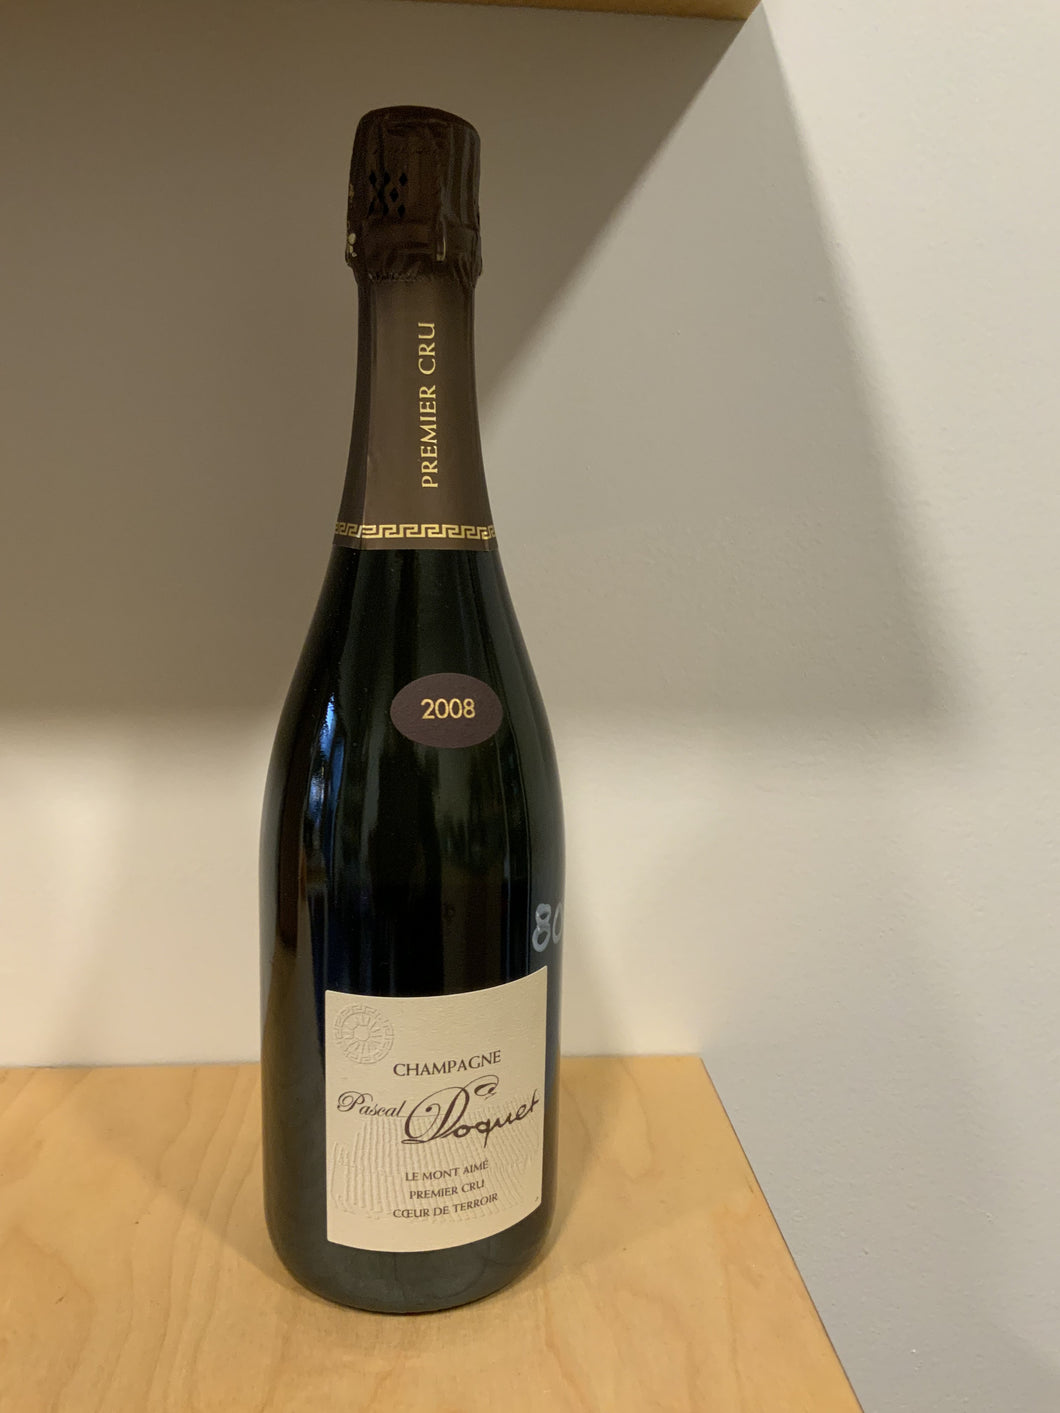 Pascal Doquet Le Mont Aime Premier Cru Coeur de Terroir 2008 Champagne